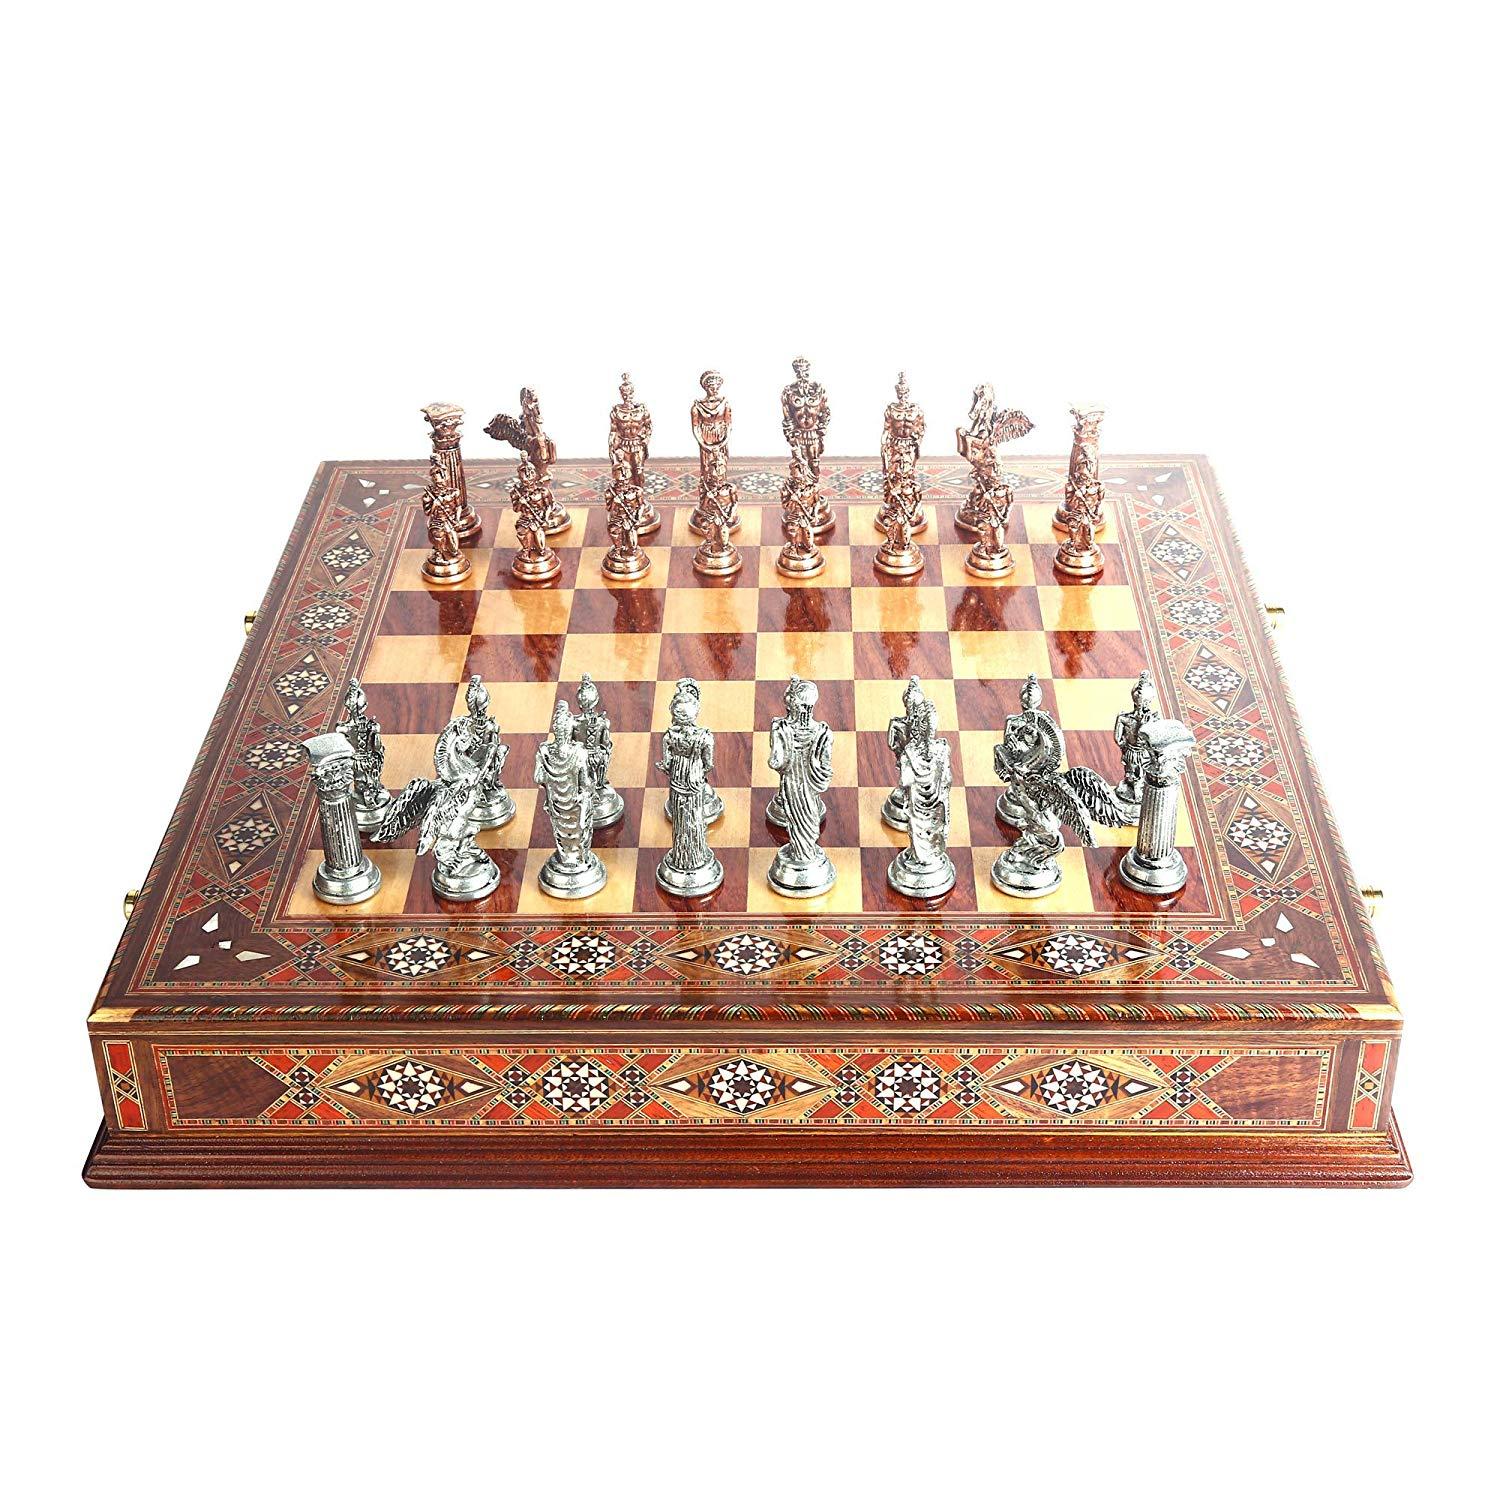 Изображение товара: Металлический Шахматный набор Pegasus, антикварные медные детали ручной работы, натуральная твердая деревянная шахматная доска, оригинальный жемчуг, хранение внутри короля 9 см